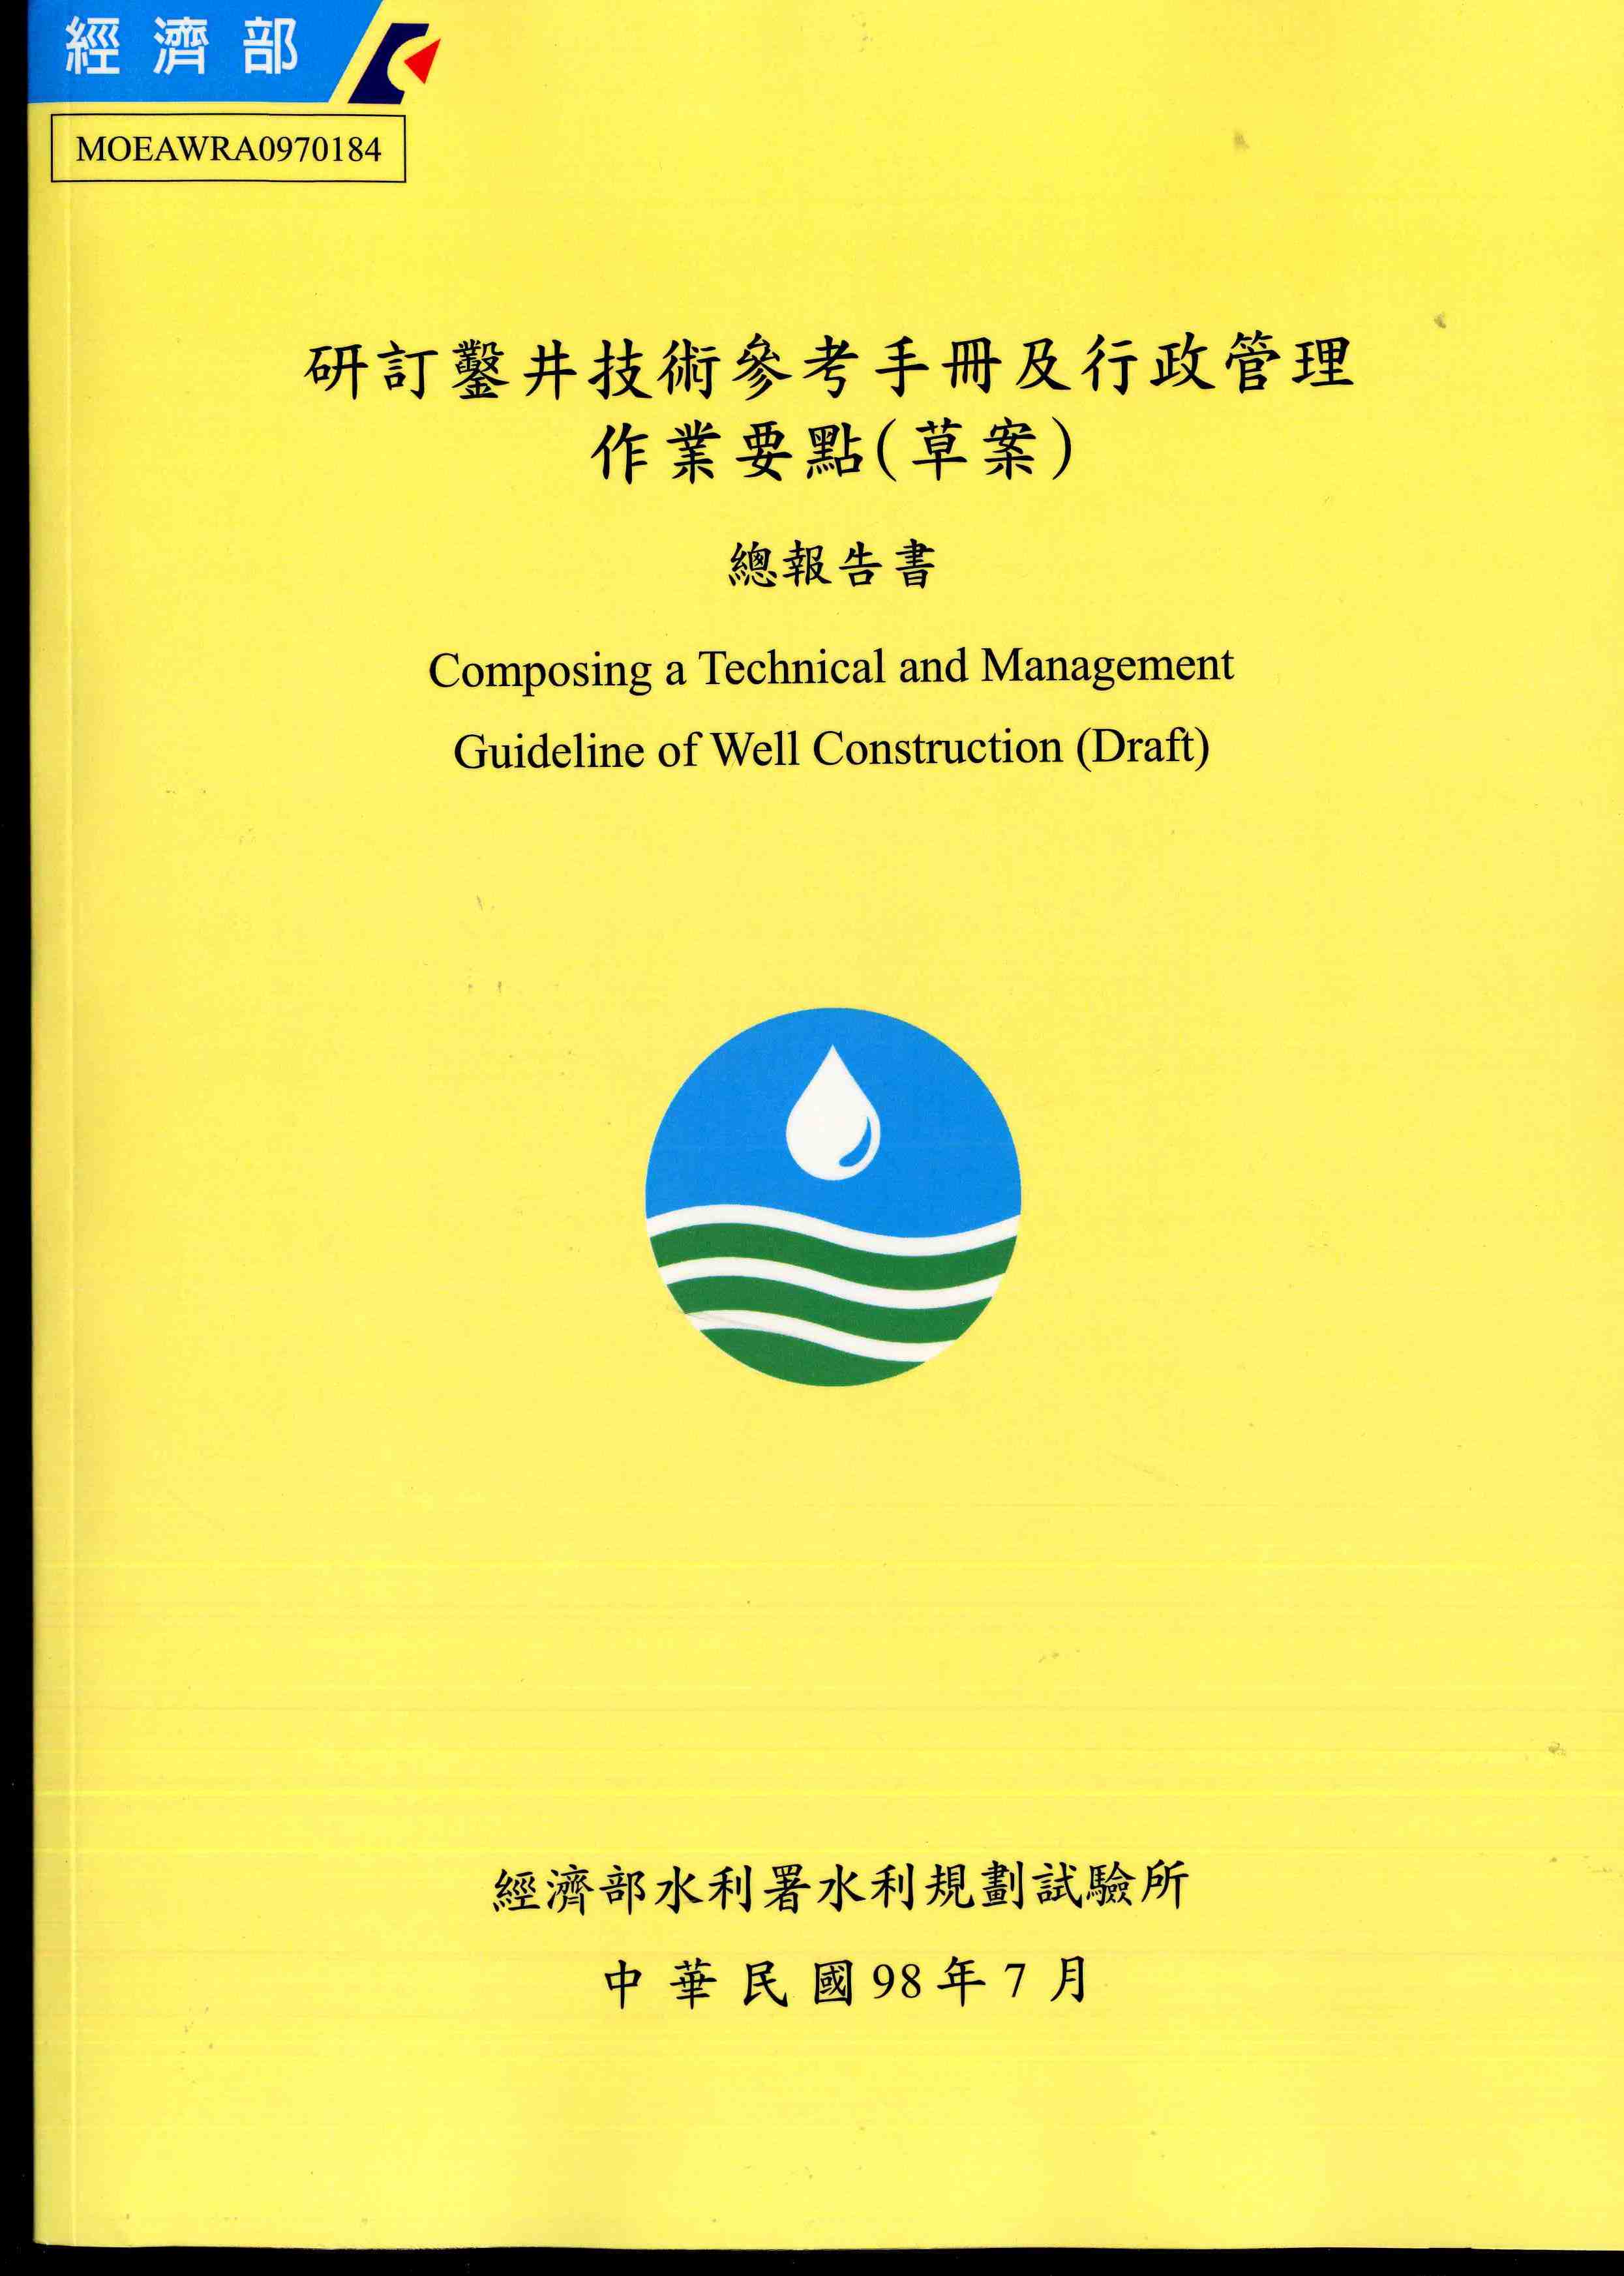 研訂鑿井技術參考手冊及行政管理作業要點(草案)總報告書